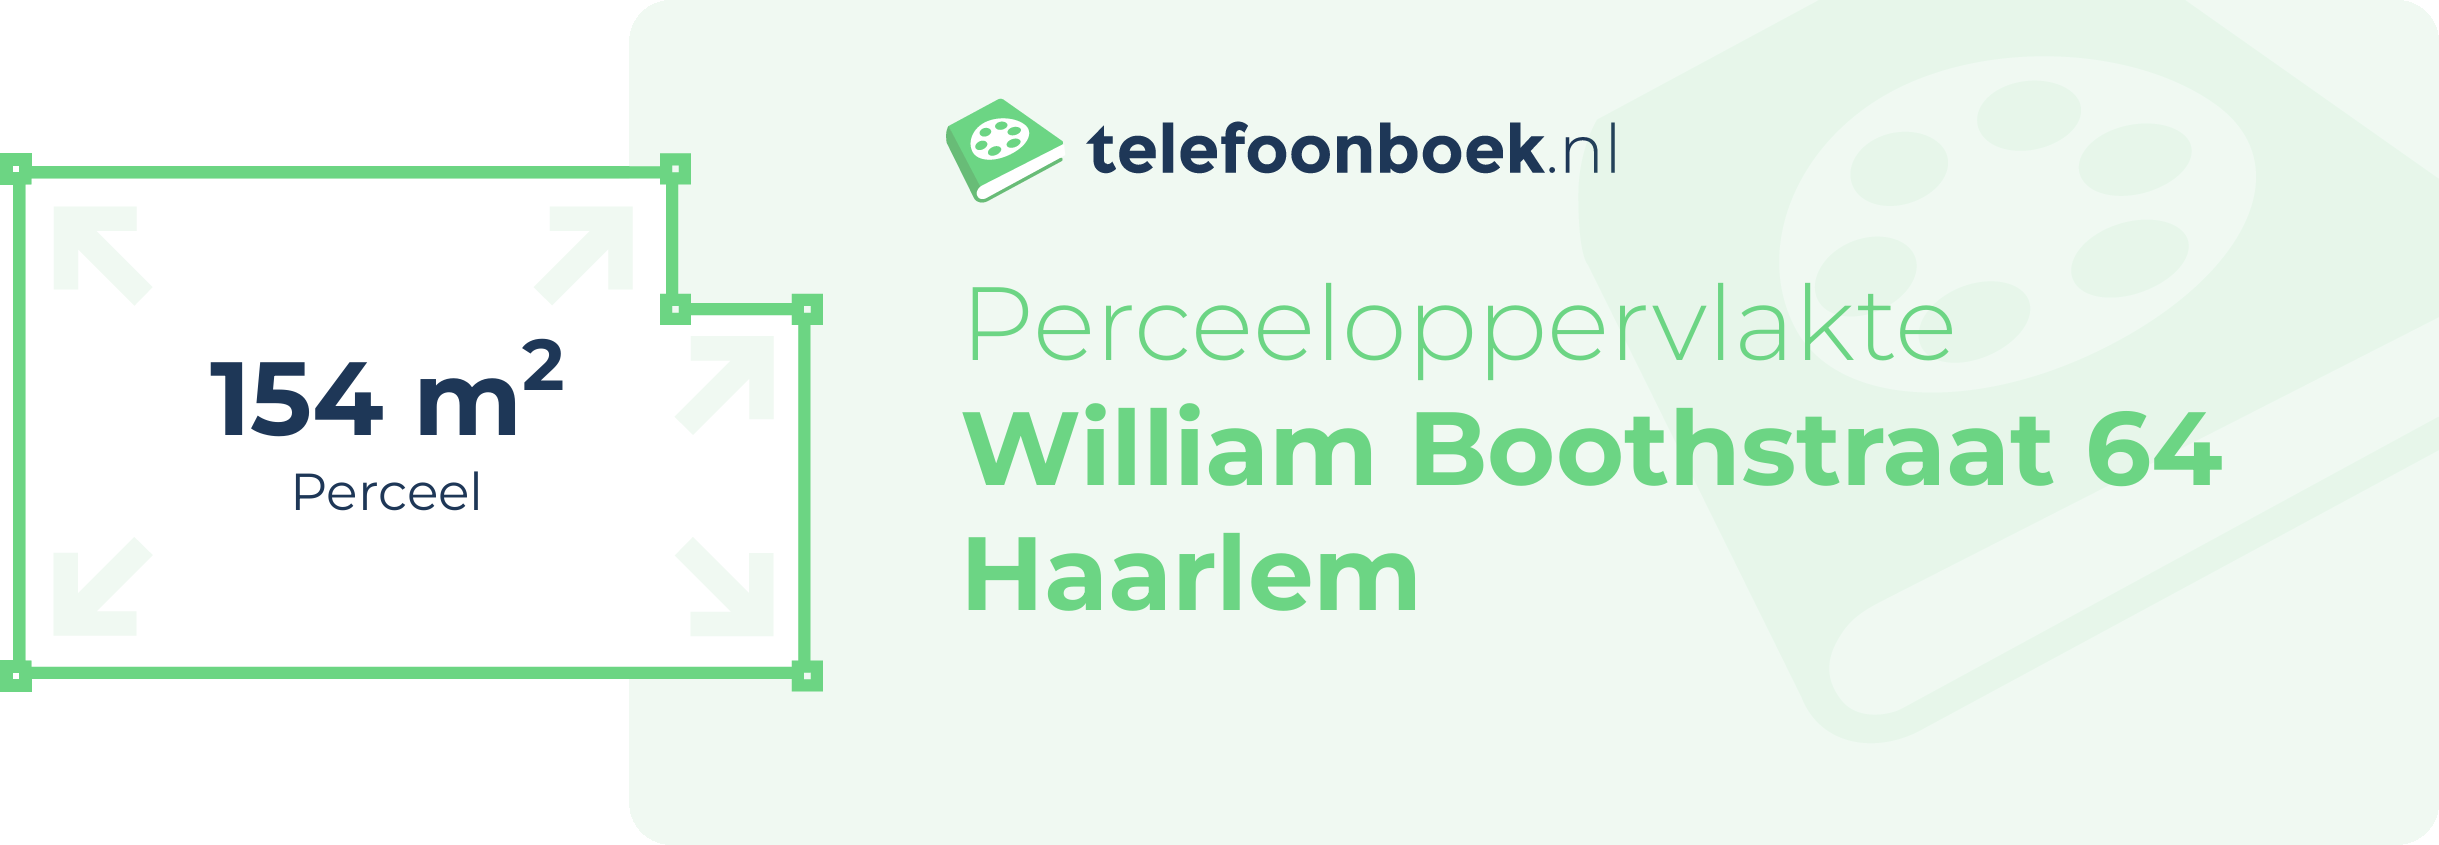 Perceeloppervlakte William Boothstraat 64 Haarlem